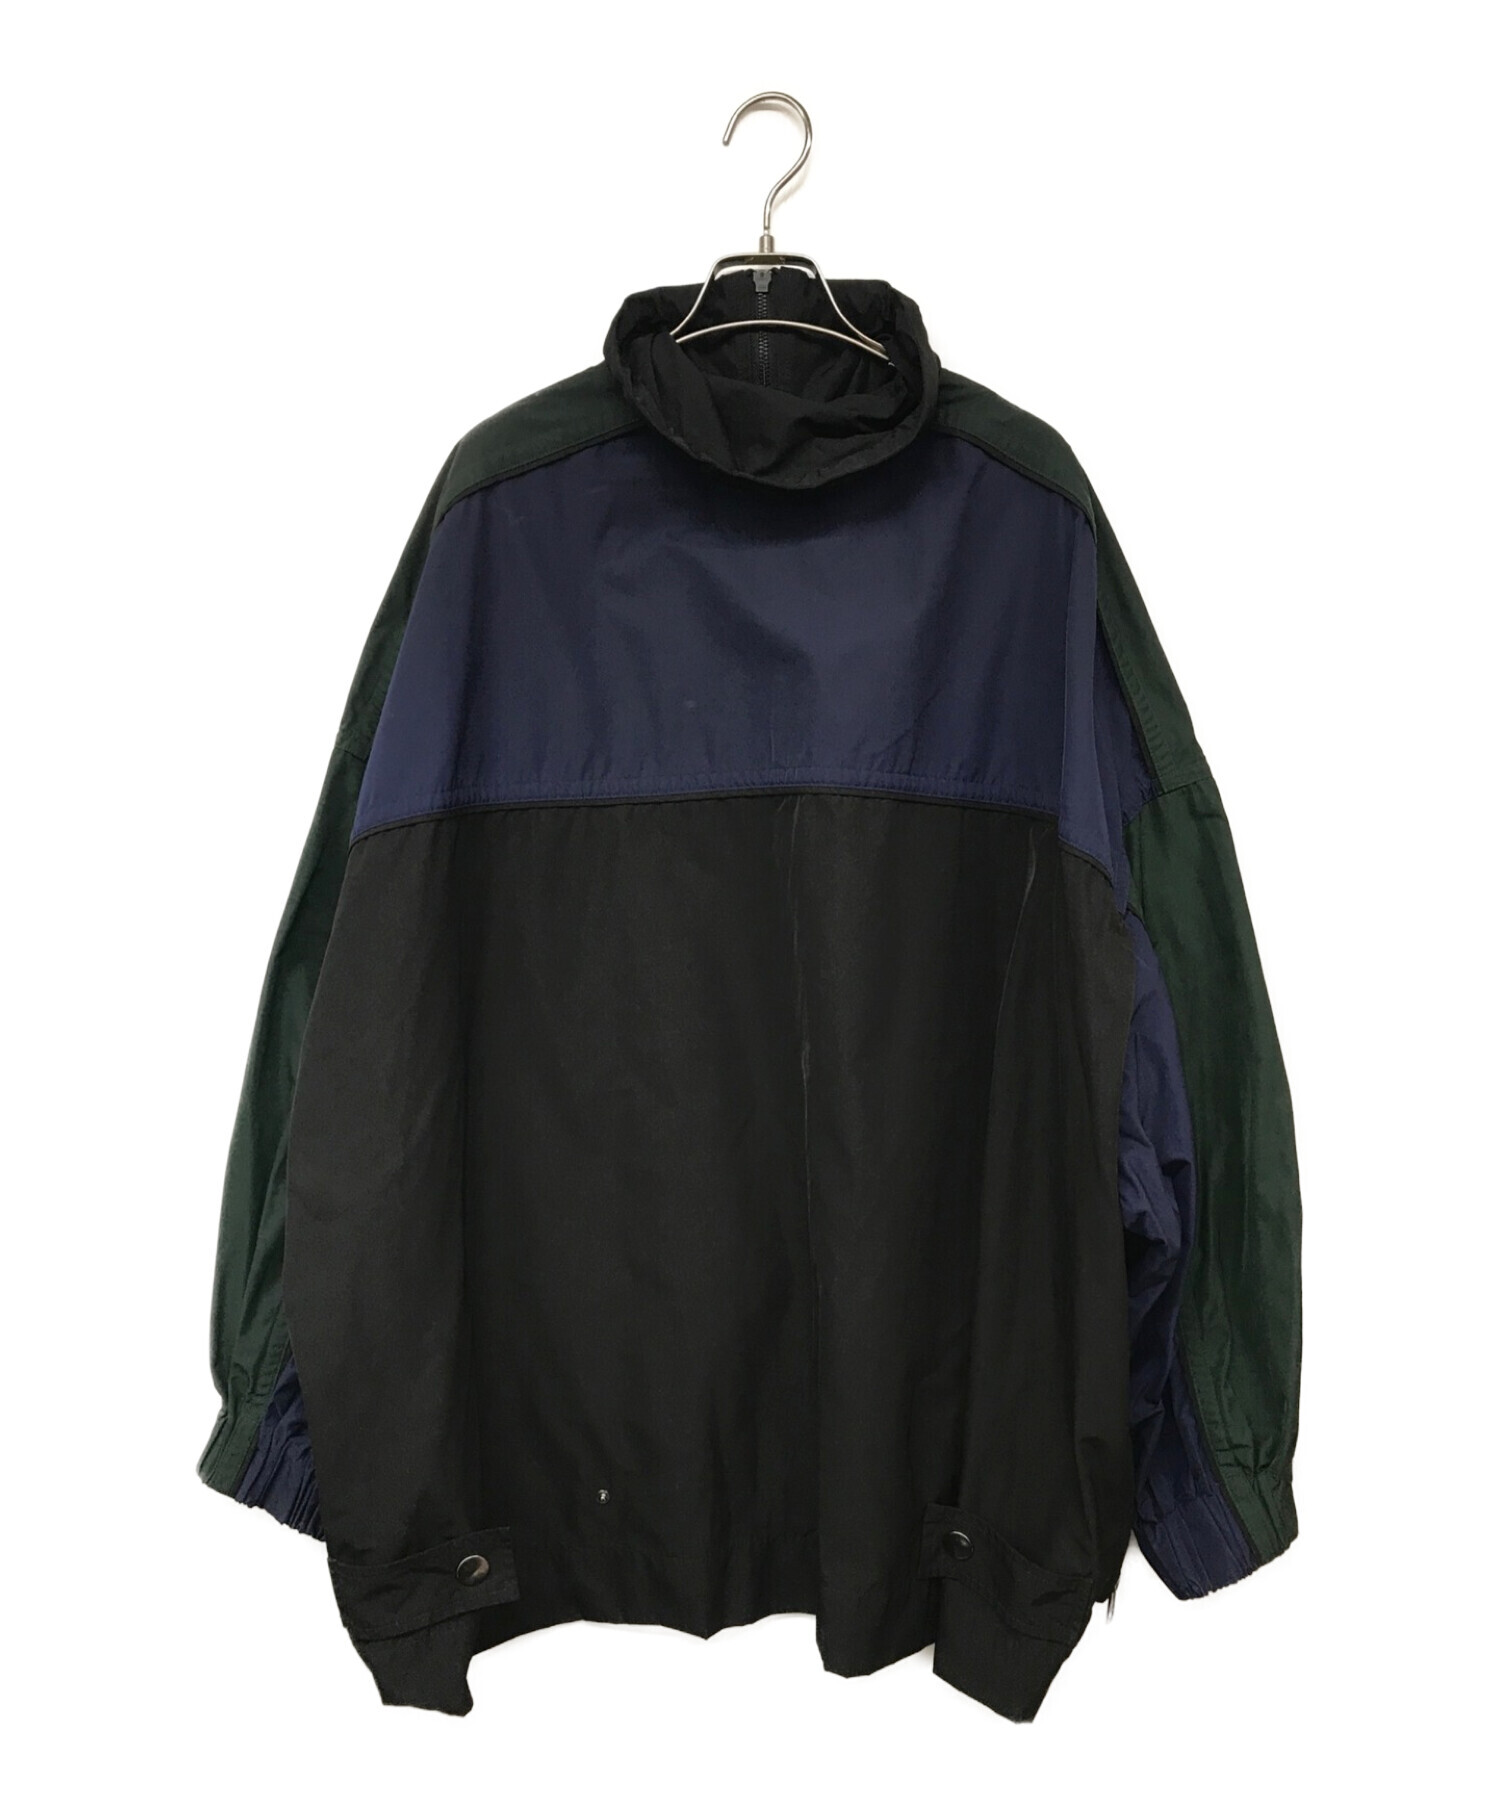 nagonstans (ナゴンスタンス) メモリーツイル ボンバージャケット ネイビー×グリーン サイズ:38